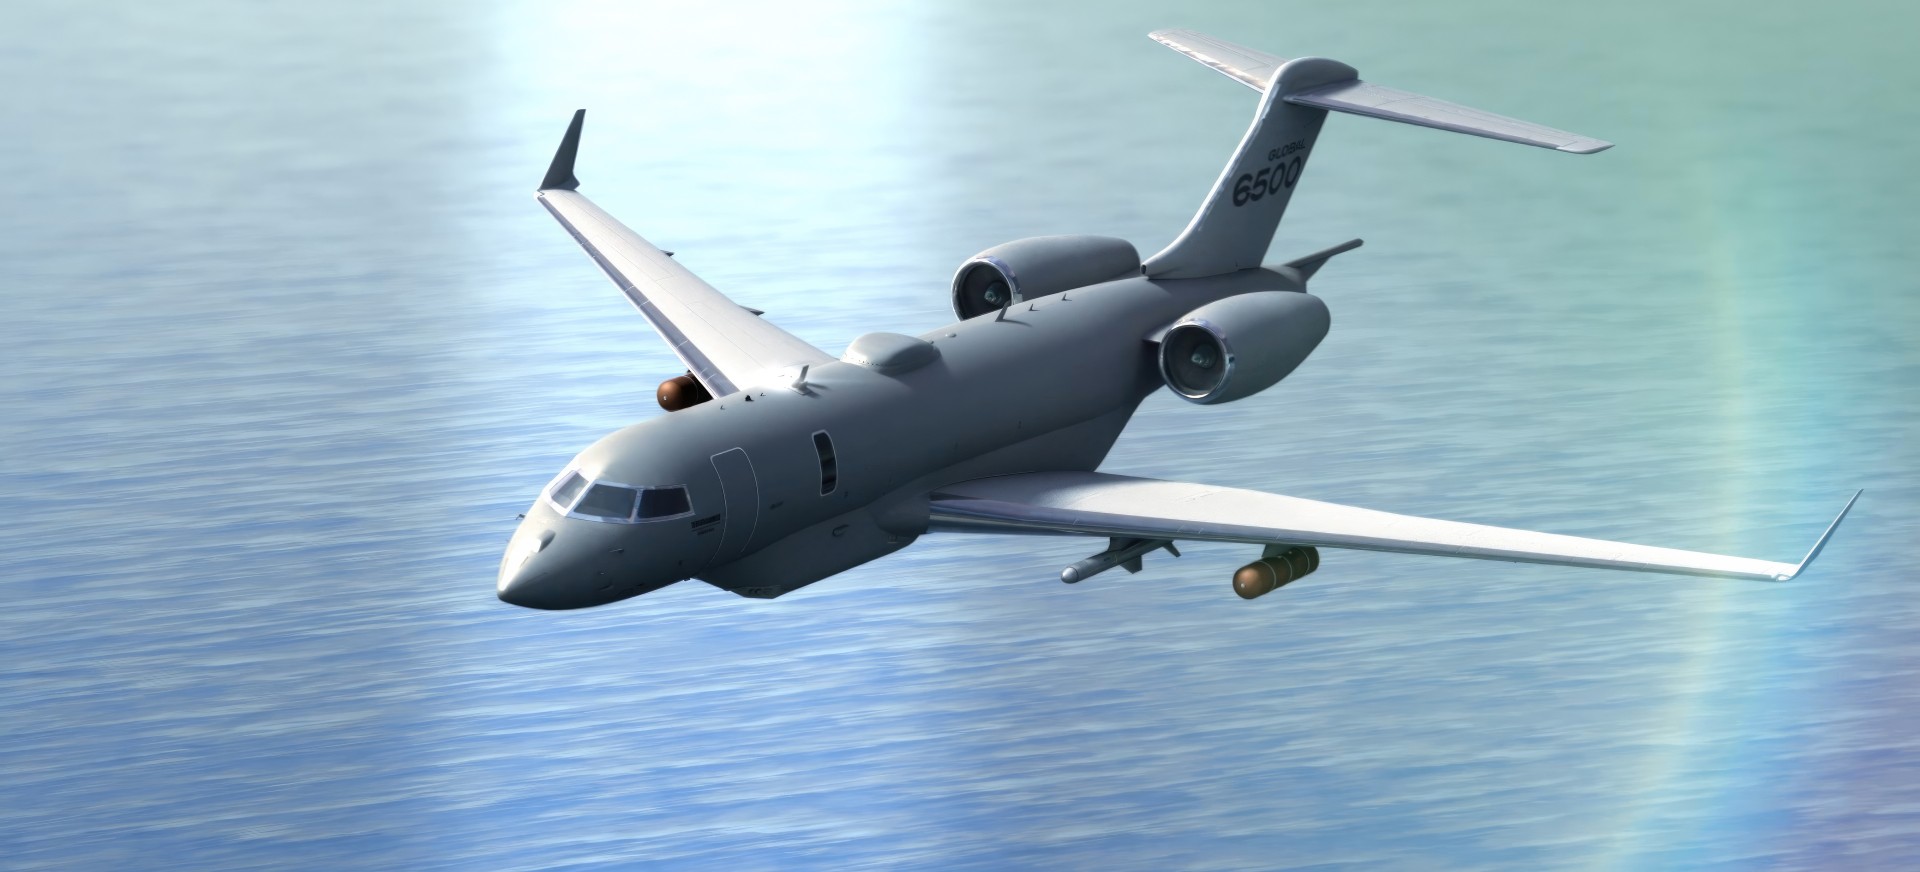 L'avion Global 6500 de Bombardier en vole